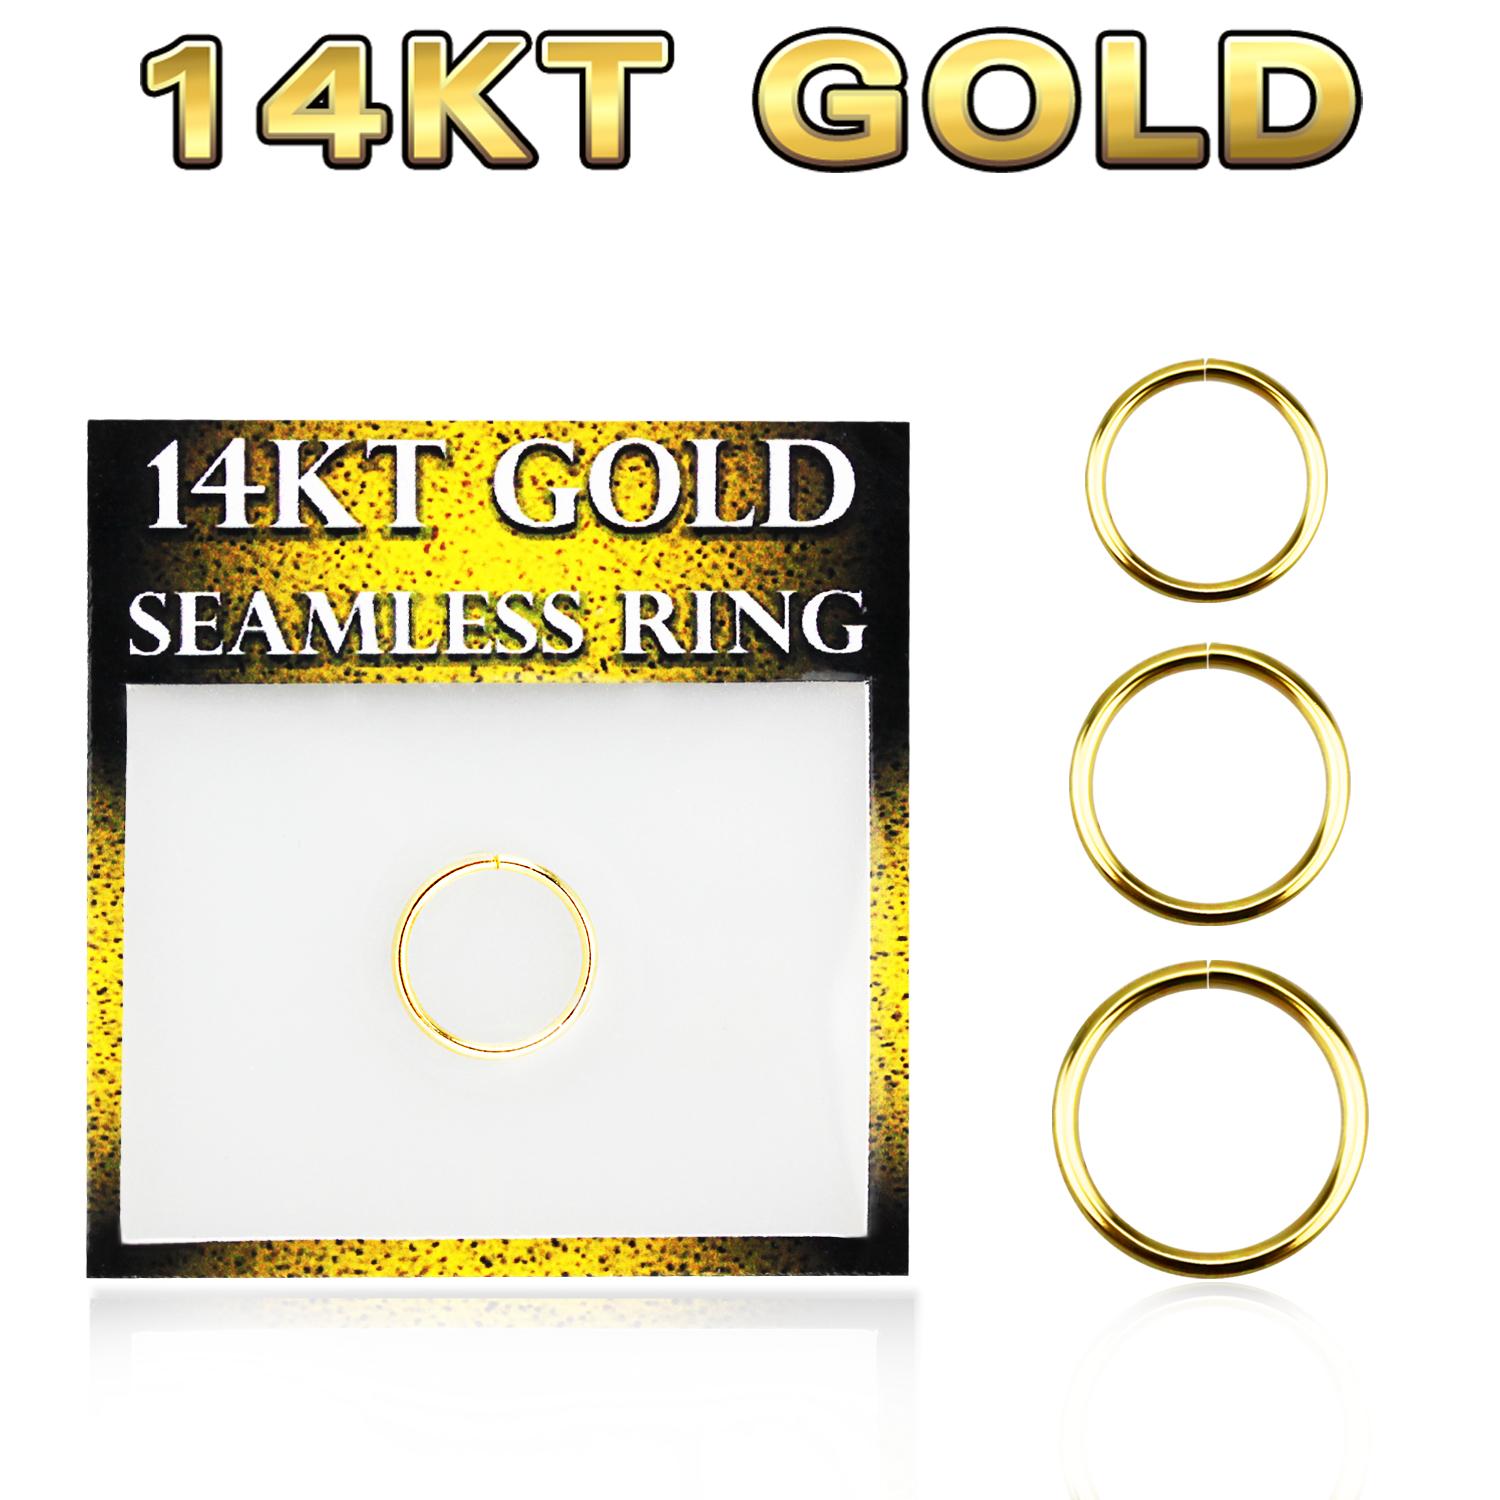 Näsring / sömlös ring 0.8mm i äkta 14 karat guld